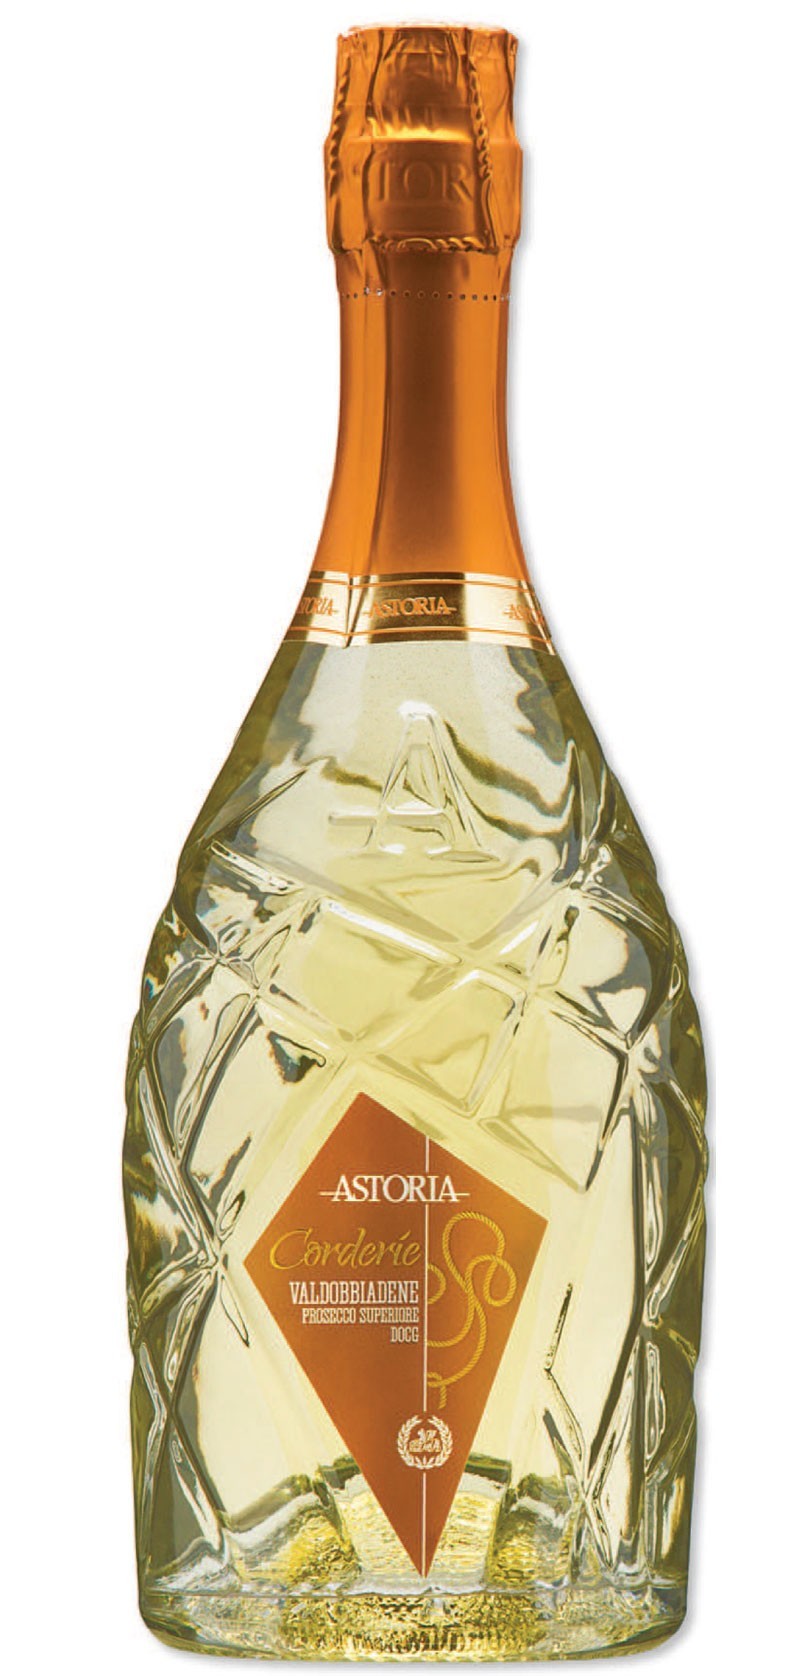 Astoria «CORDERIE» Valdobbiadene Prosecco Superiore bouteille